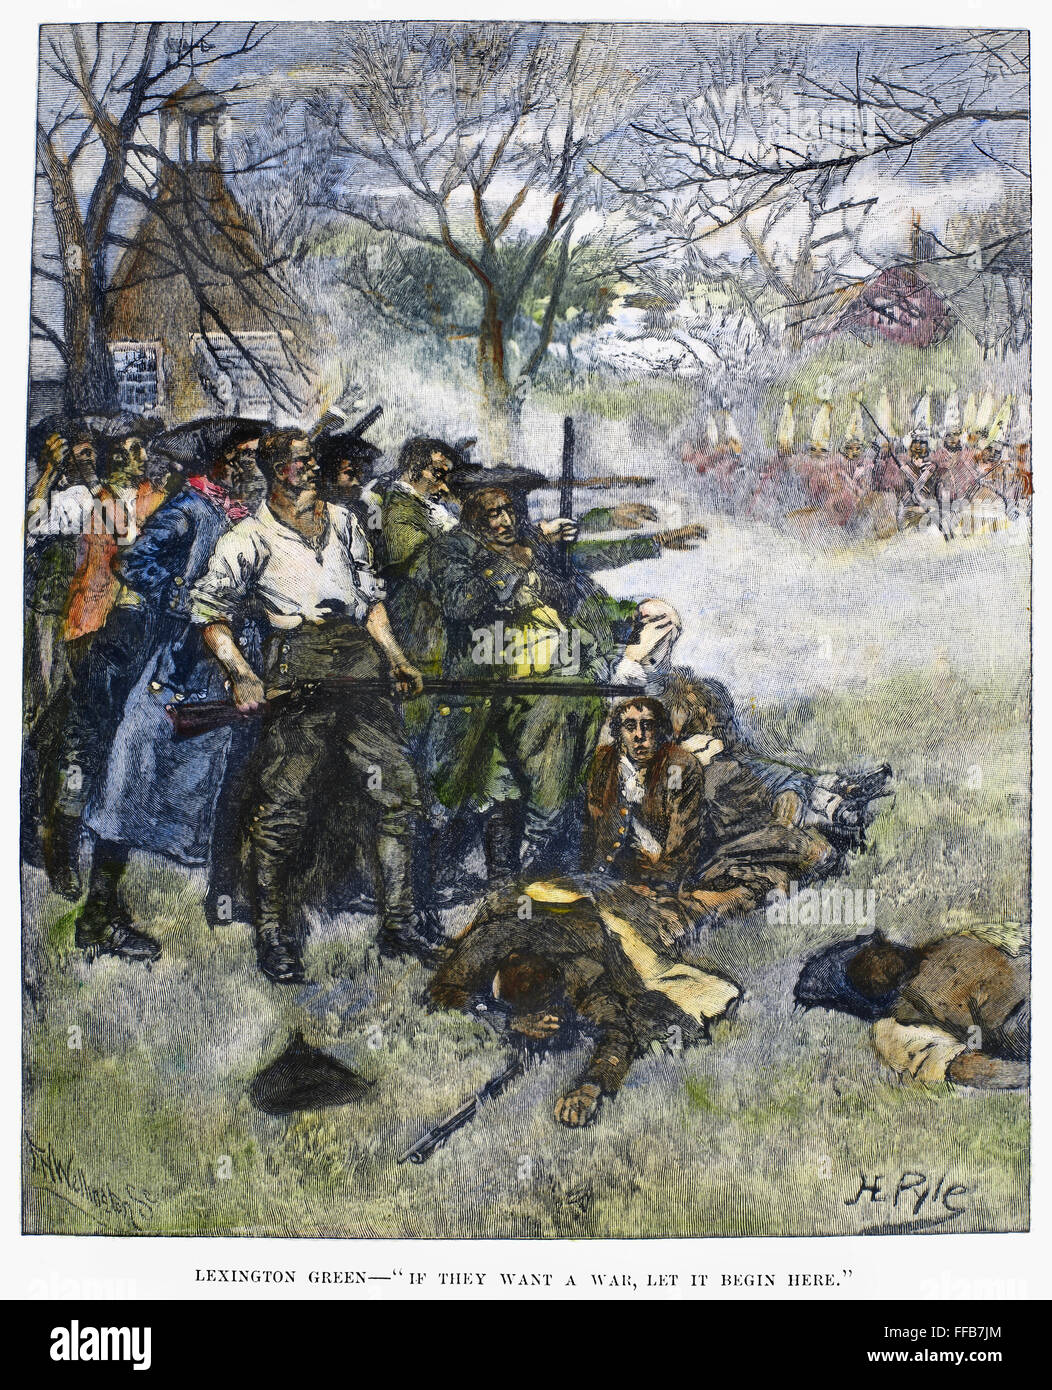 Battaglia di Lexington, 1775. /NColonial minutemen affrontare le truppe britanniche a Lexington Green all'inizio della Rivoluzione Americana, 19 aprile 1775. Incisione su legno, American, 1883, dopo Howard Pyle. Foto Stock